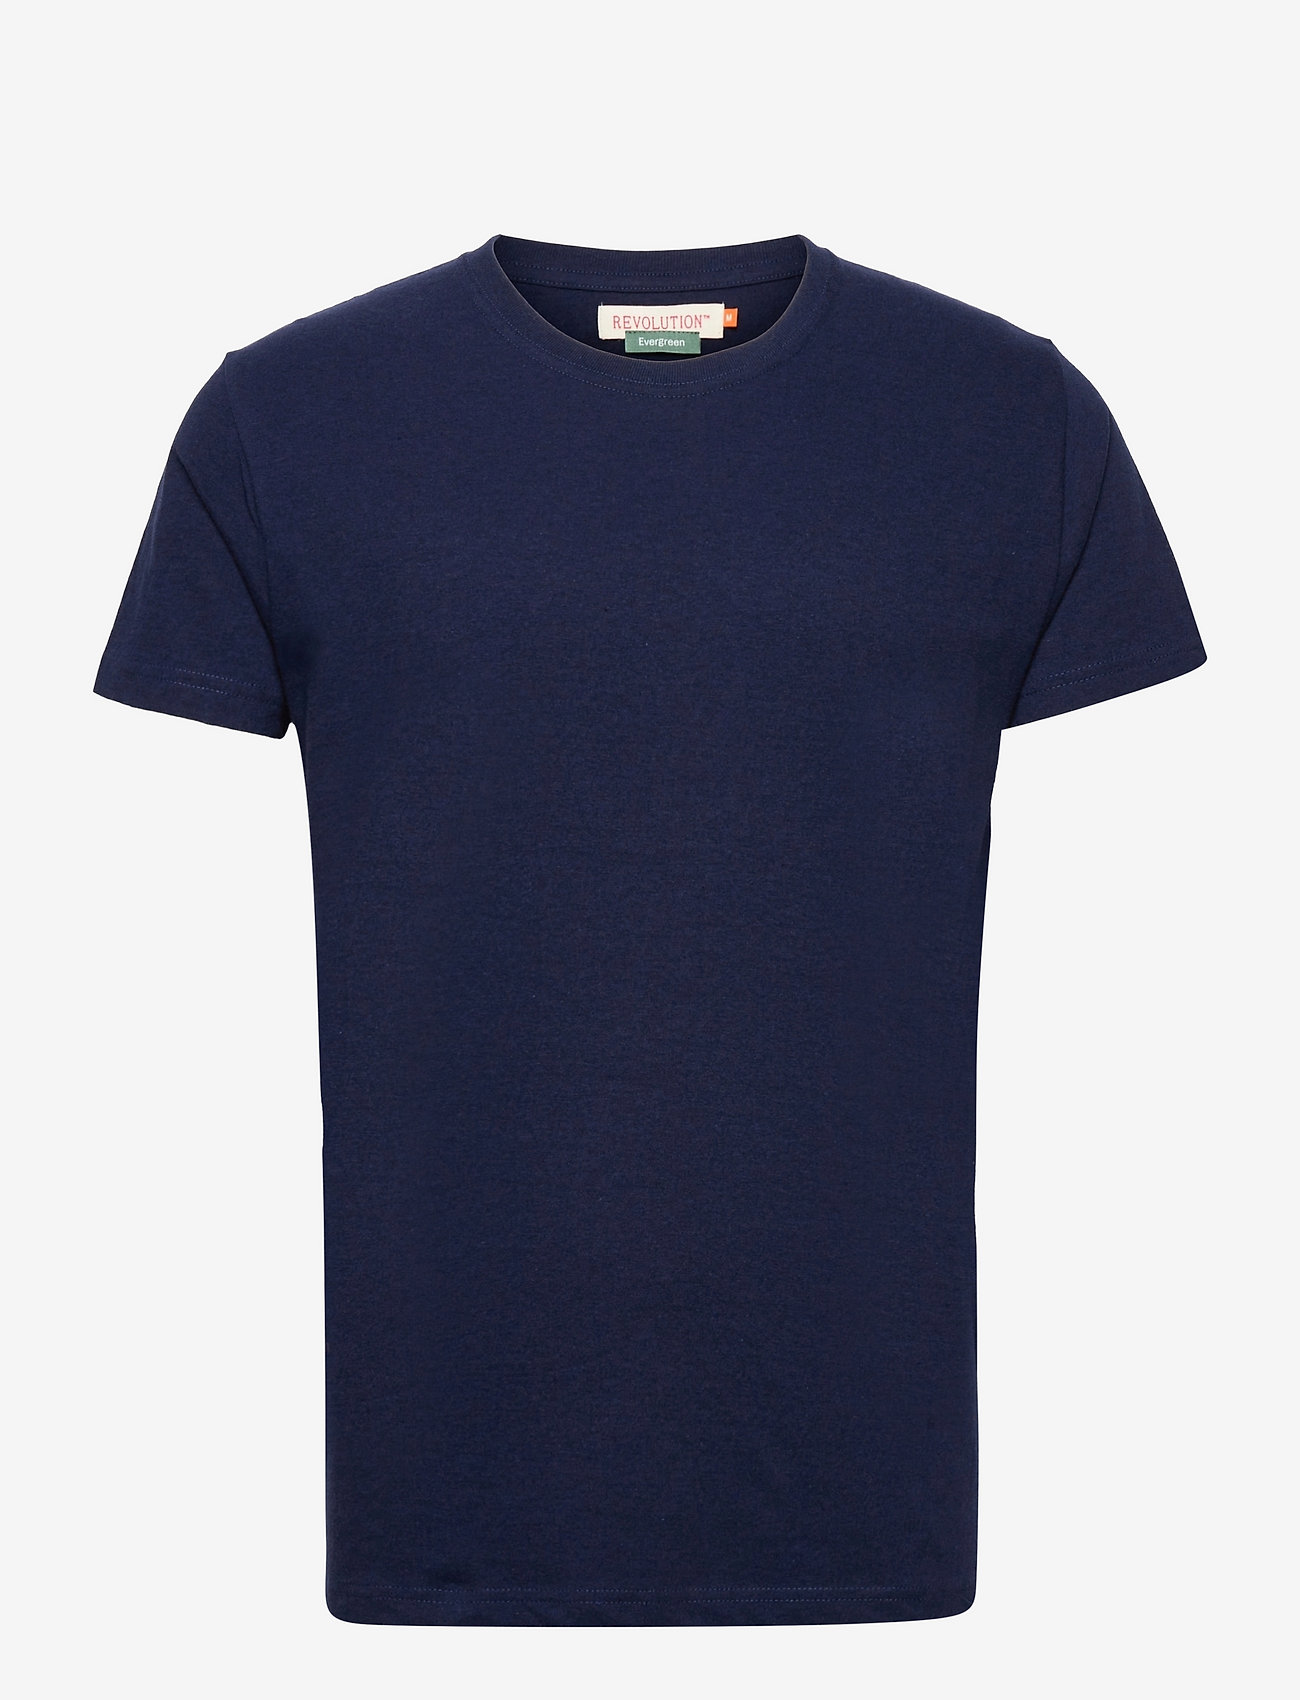 Revolution - Regular fit round neck t-shirt - mažiausios kainos - navy-mel - 0